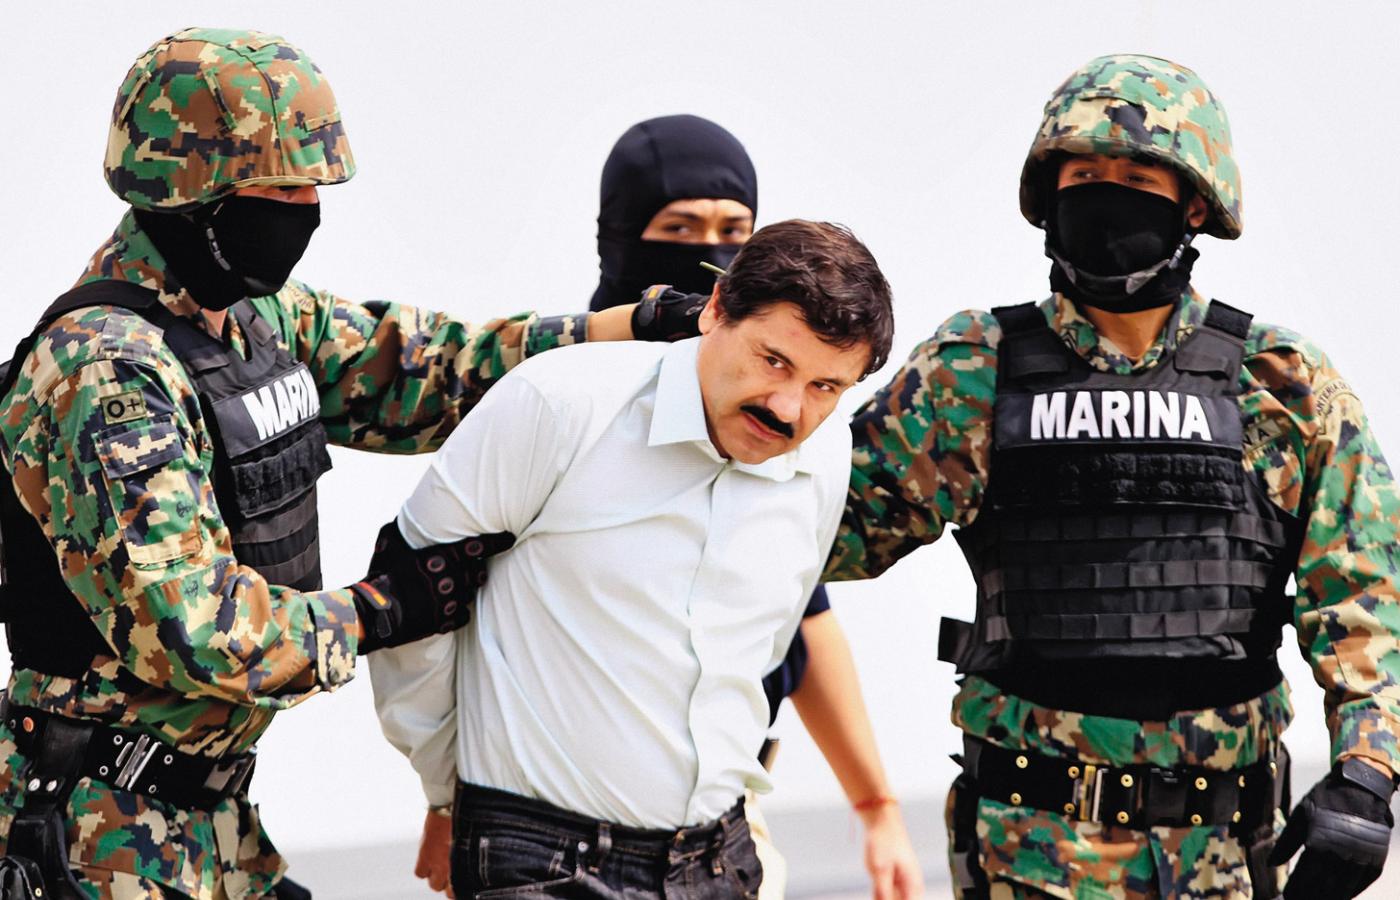 Aresztowanie El Chapo - przywódcy największej mafii narkotykowej w Meksyku.